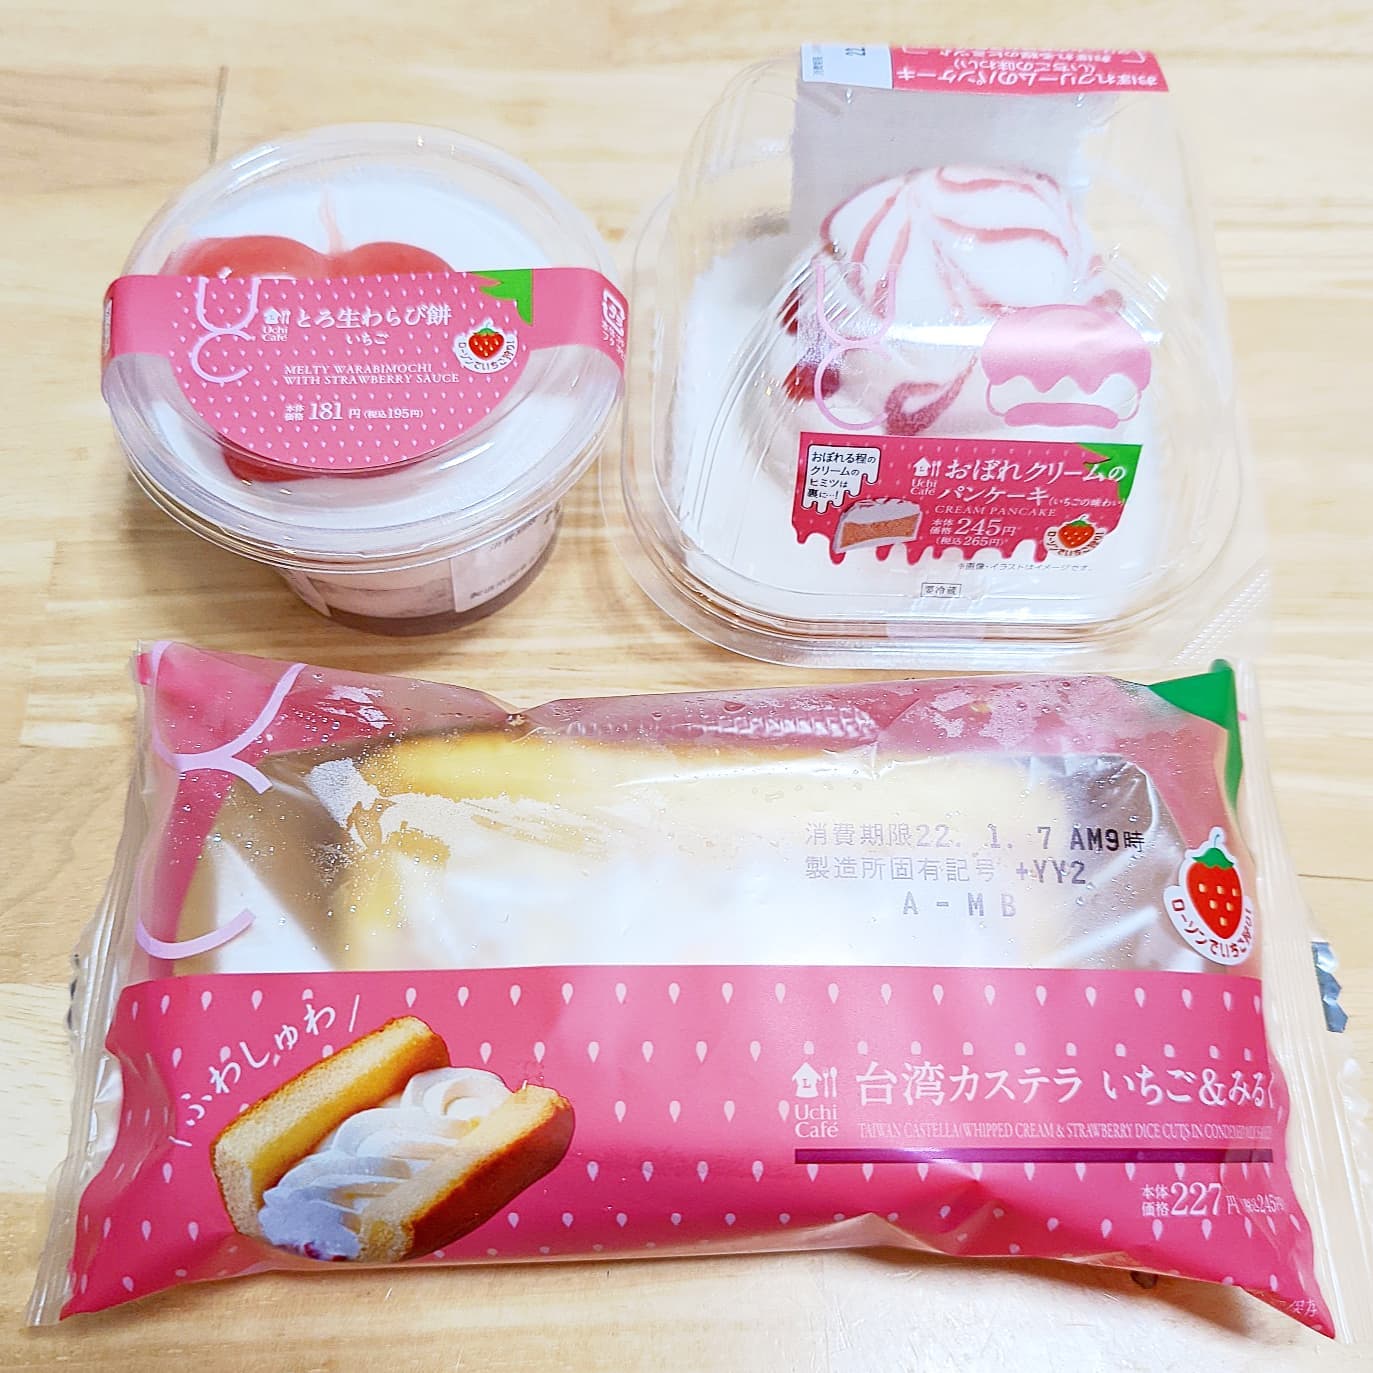 #いちごミルクラブ #ローソン #台湾カステラいちごアンドミルク #とろ生わらび餅いちご #おぼれクリームのパンケーキ謎イチゴ系－－☆－－本物イチゴ系甘さ強め系－－☆－－控え目系こってり系－－☆－－さっぱり系超ミルク系－－☆－－生クリーム系おもいで度－－☆－－ #侍猫度ローソンのいちご狩りフェアで見つけてきた。たっぷりクリームと苺ジャムが美味しいやつ！わらび餅が苺味だったり、パンケーキがピンクだったりおもしろかったですがね、台湾カステラがミルククリームで好きだっかなぁ。11日から他の苺スイーツがでるっぽいからまた一狩りしにかなきゃですな#いちごオレ #いちごオレ味 #いちごミルク #いちごミルクみたい #いちご牛乳 #いちご牛乳味 #イチゴ牛乳 #いちご牛乳クラブ #苺牛乳 #苺牛乳が好き #苺ミルク #苺スイーツ #苺 #苺好きに生まれたからには #メソギア派 #糖分 #いちごミルク味 #スイーツ #スイーツ好き #スイーツスタグラム #スイーツタイム #スイーツ写真 #strawberry #strawberrymilk